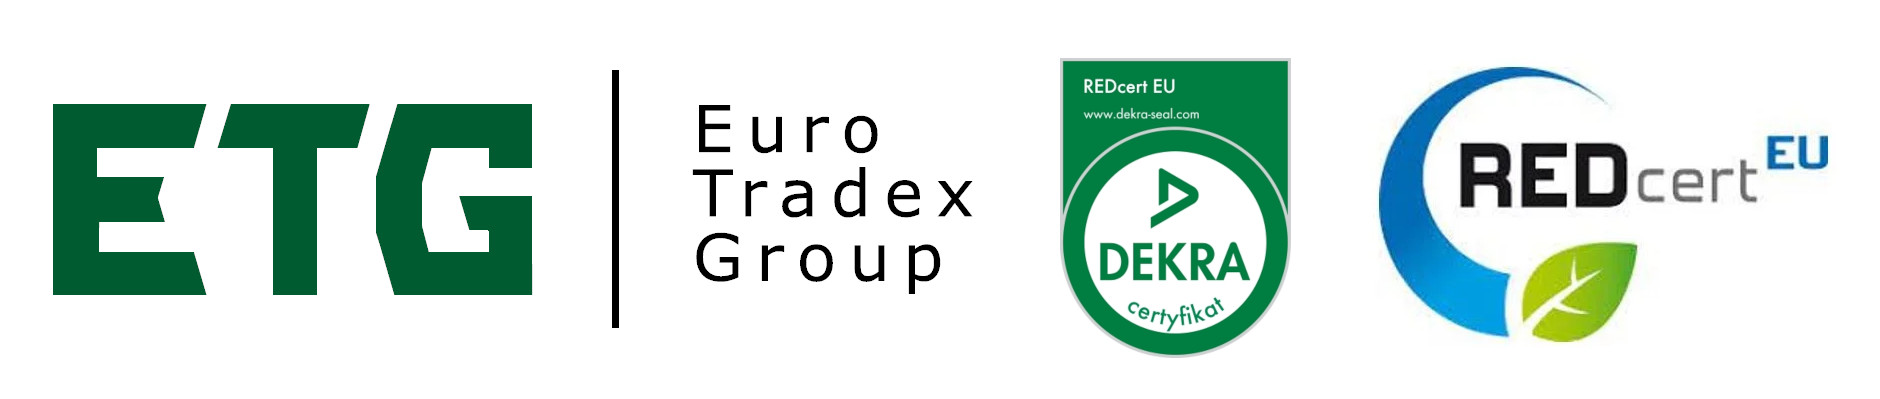 Euro Tradex Group Sp. z o.o. - Nowy Sącz